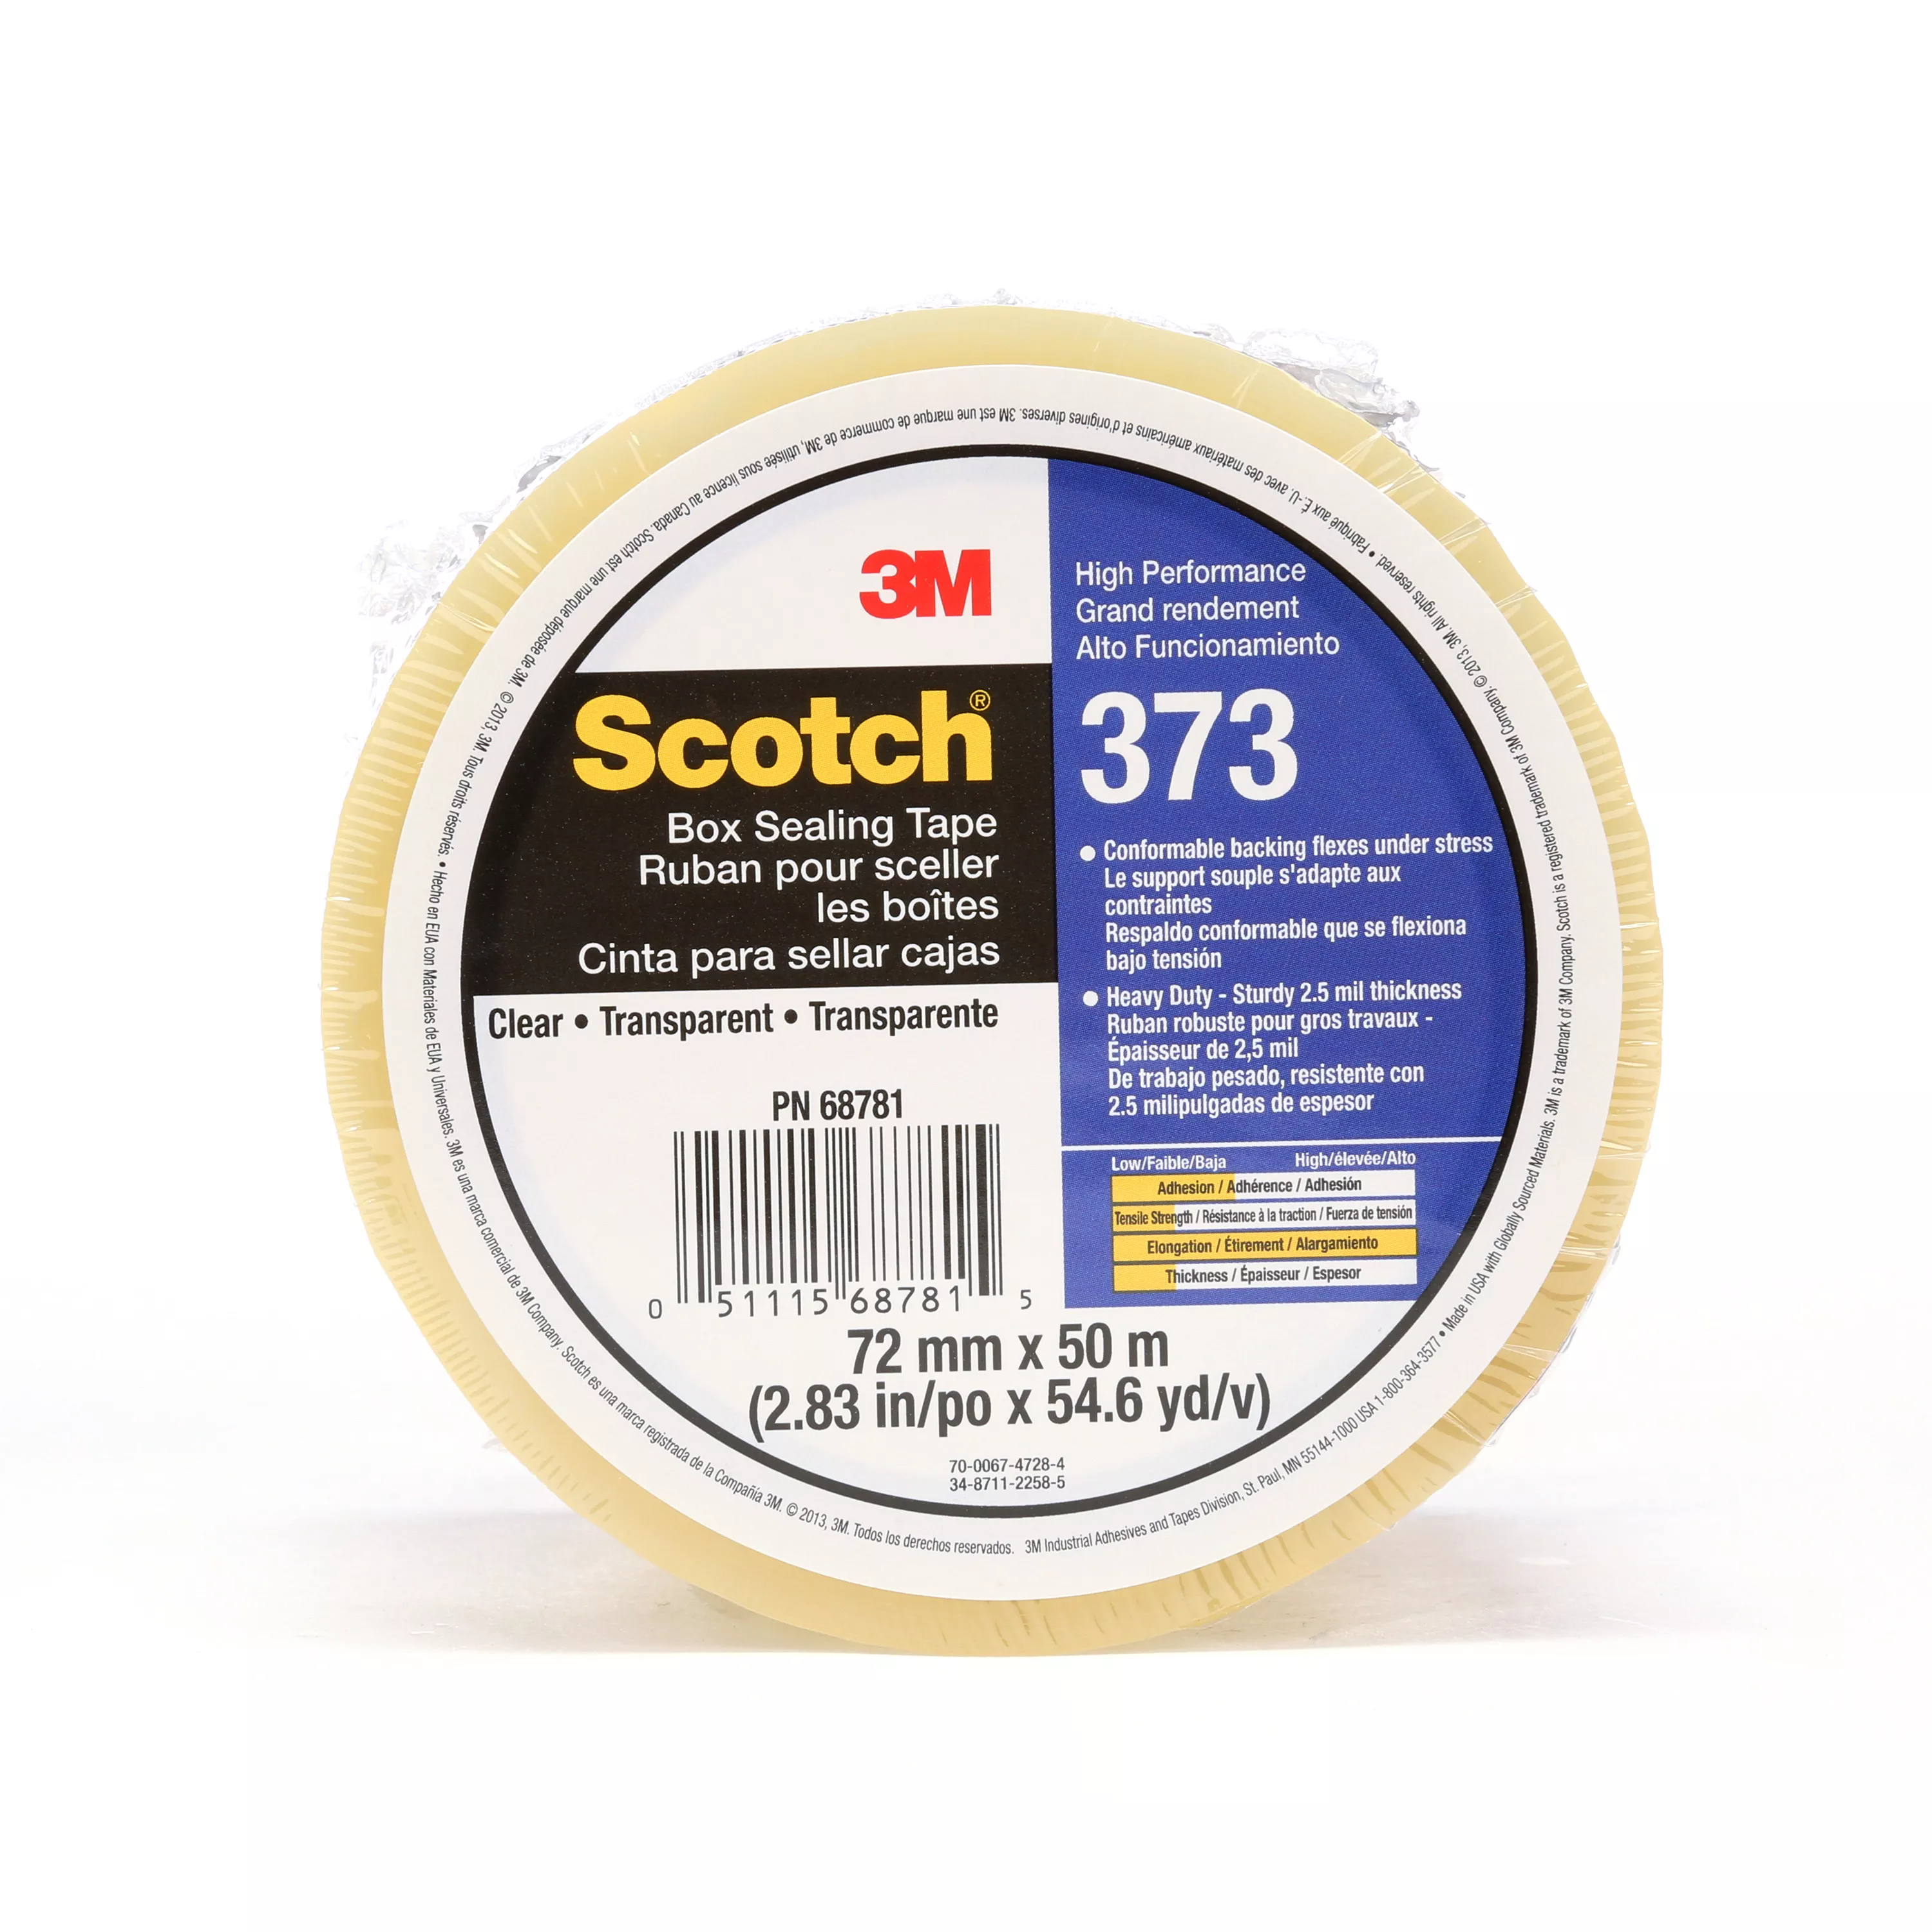 SKU 7010312442 | Scotch® Box Sealing Tape 373